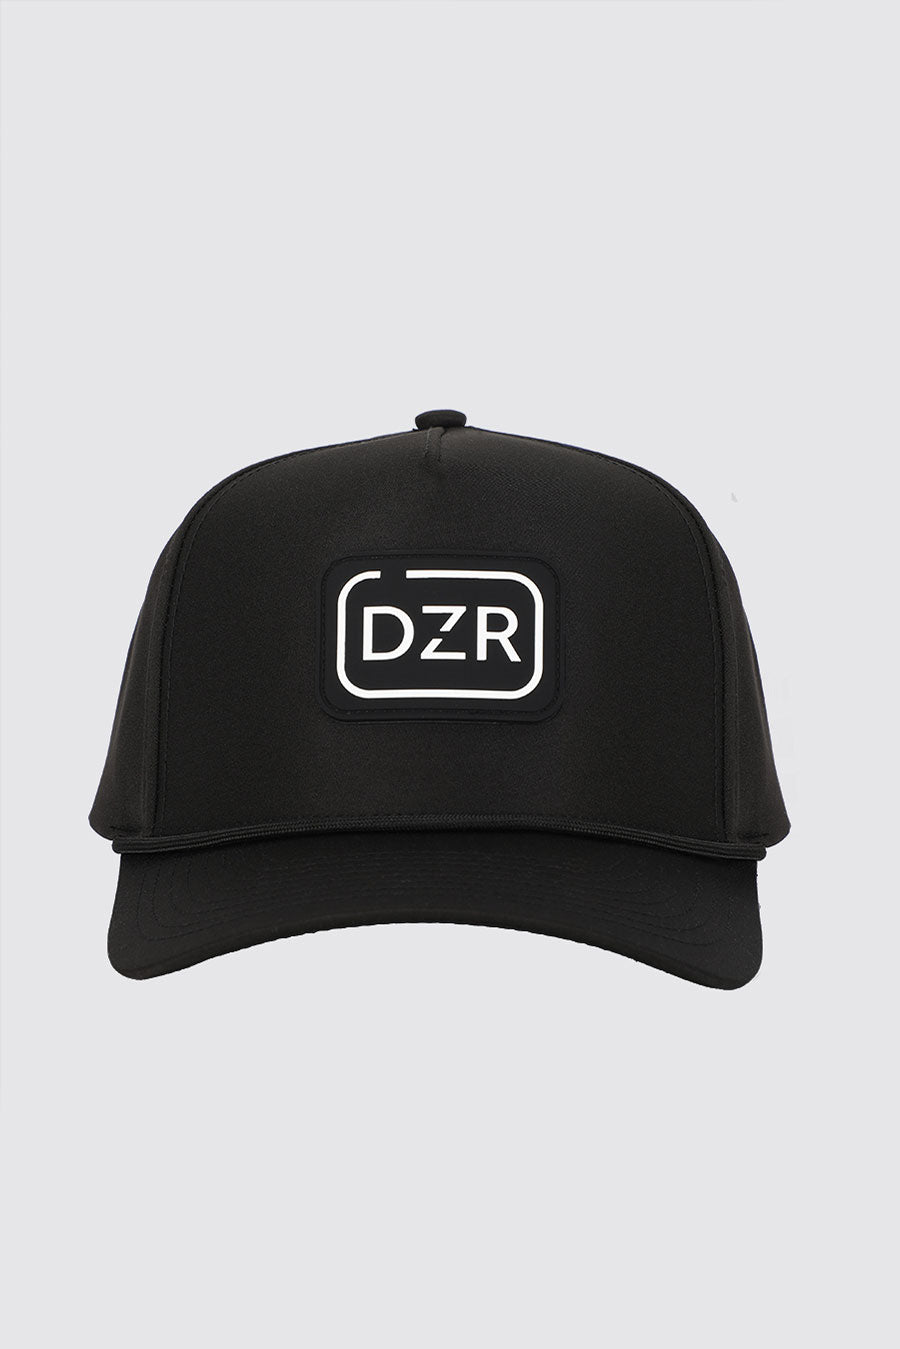 Dozer Dog Range Hat